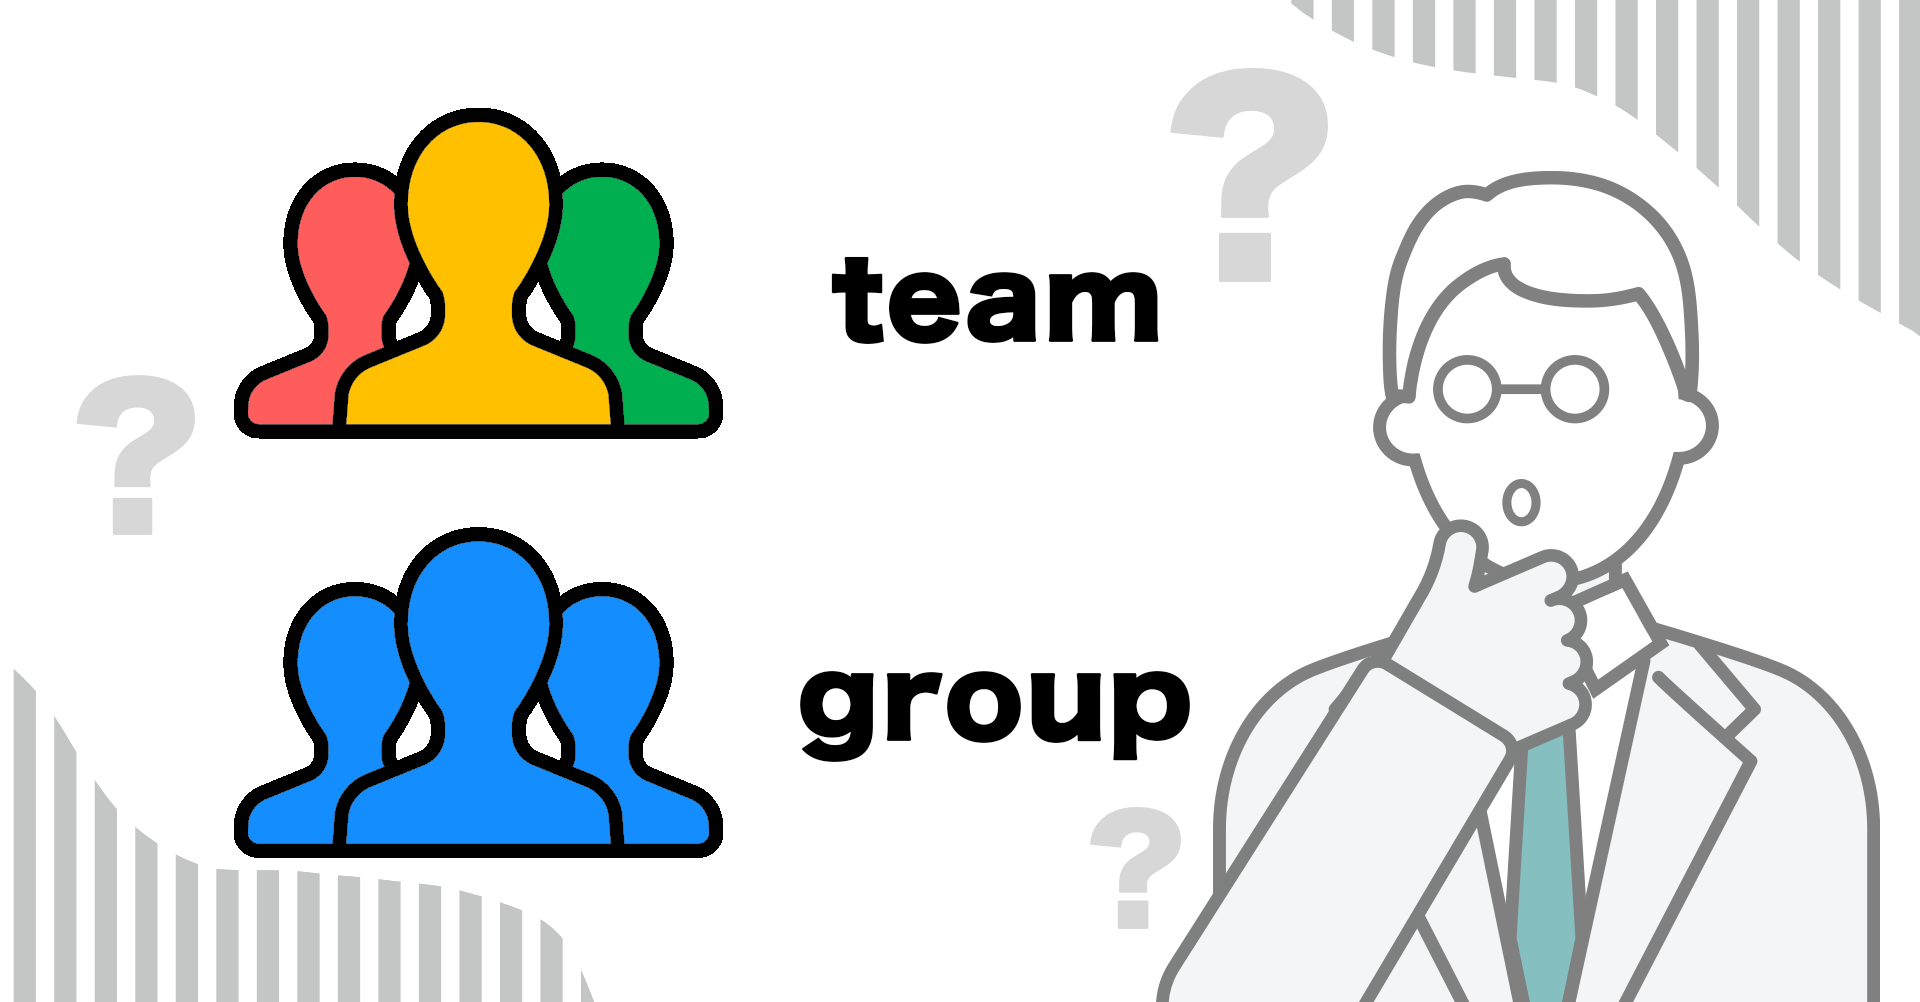 組織課題解決のためにどうすればチームが活性化されるのか、そもそも「チーム」とは何なのか、チームを活性化するには何が大切なのかという点を考えてみましょう。